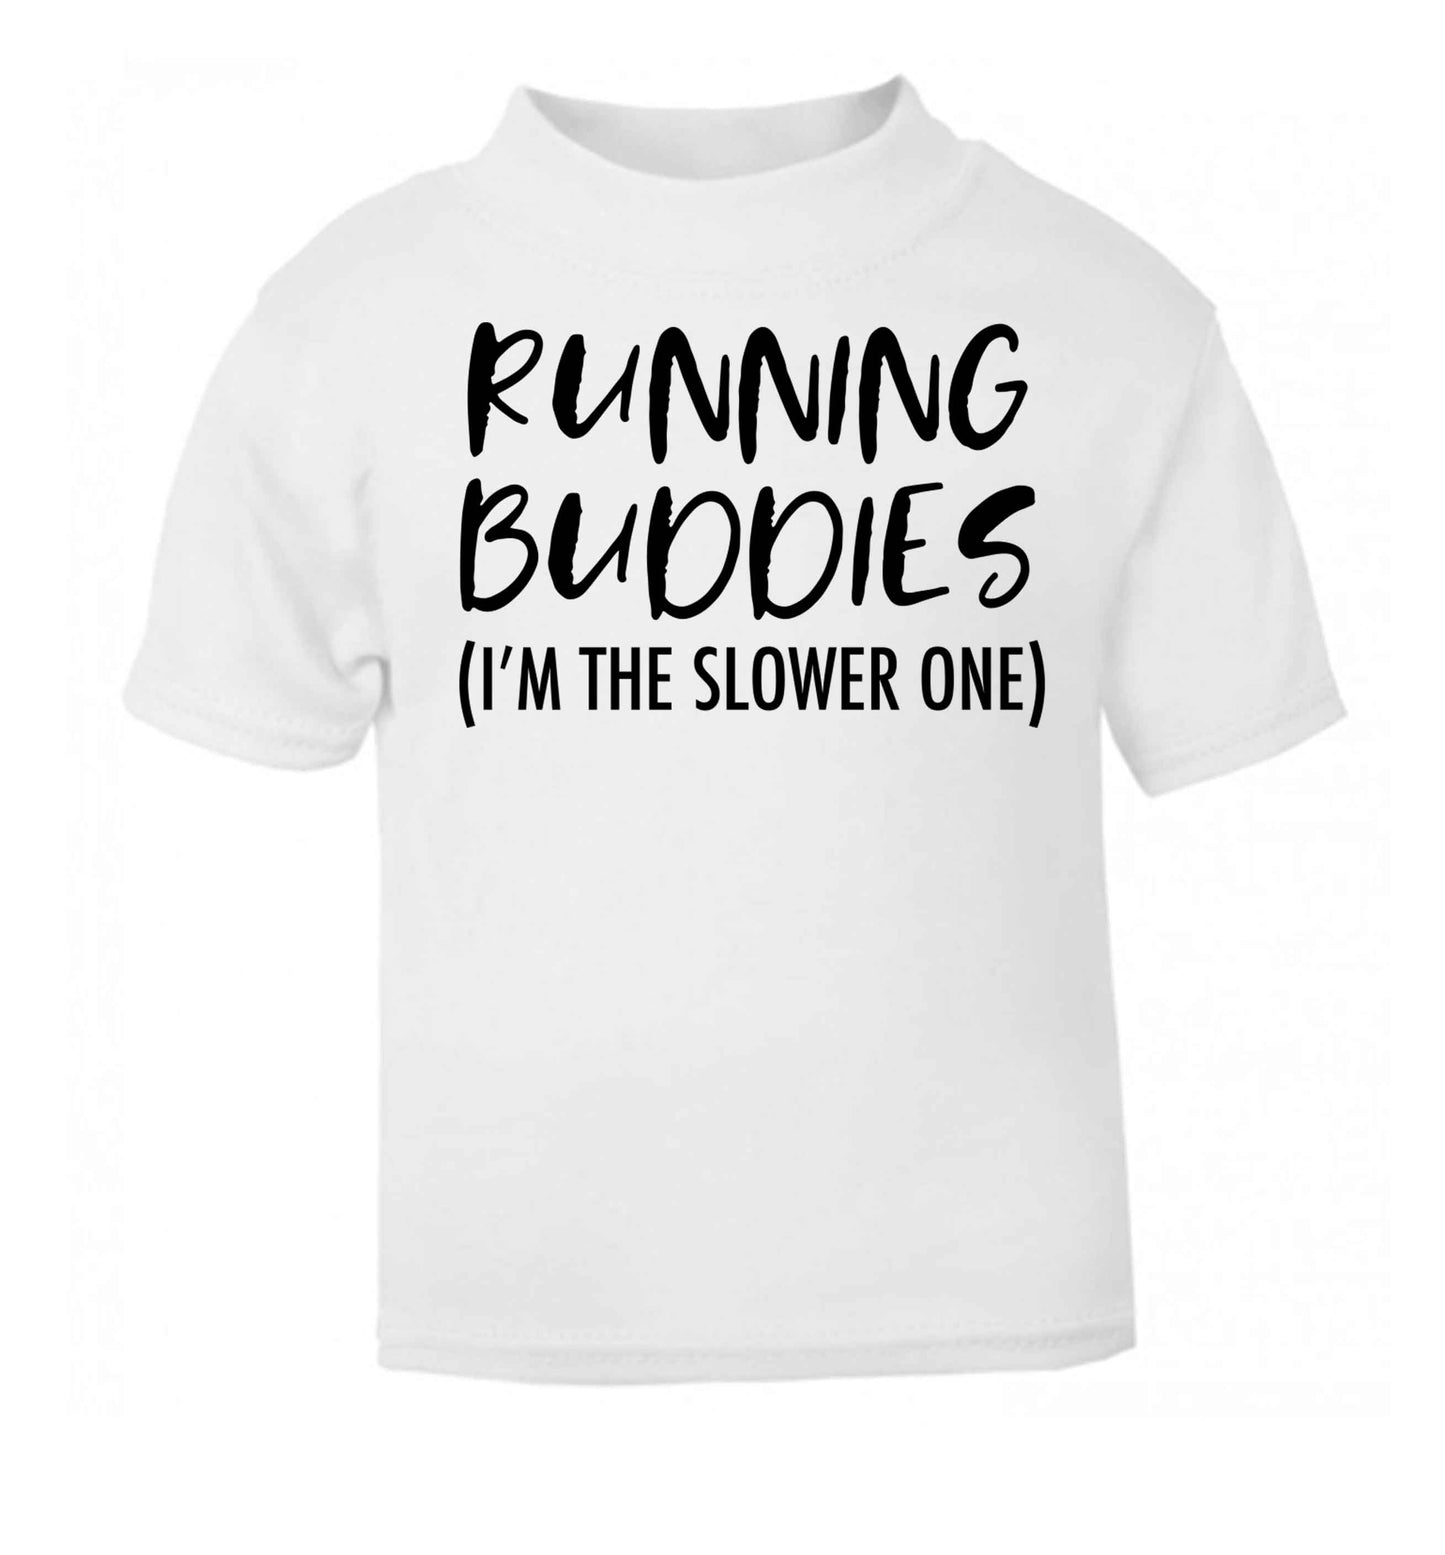 Running buddies (I'm the slower one) white baby toddler Tshirt 2 Years